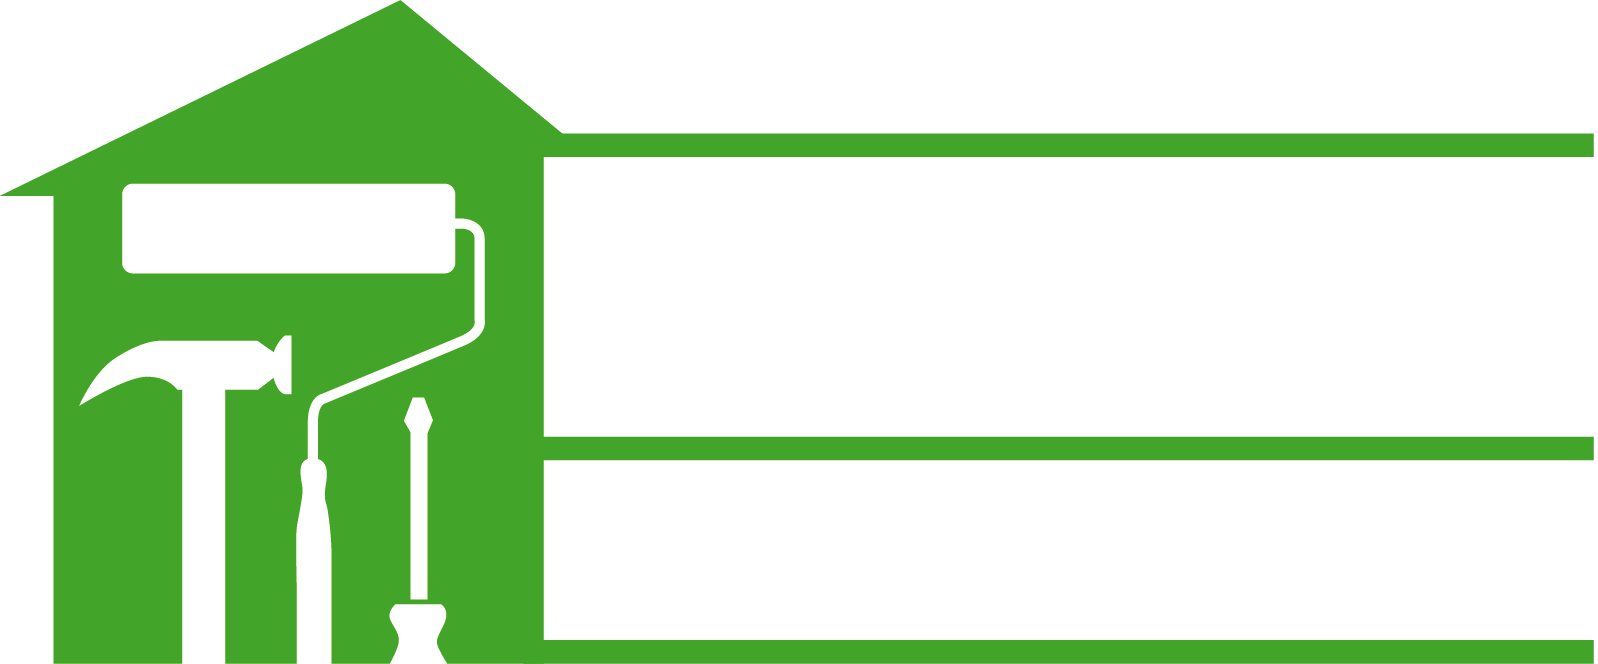 Keeley Builders